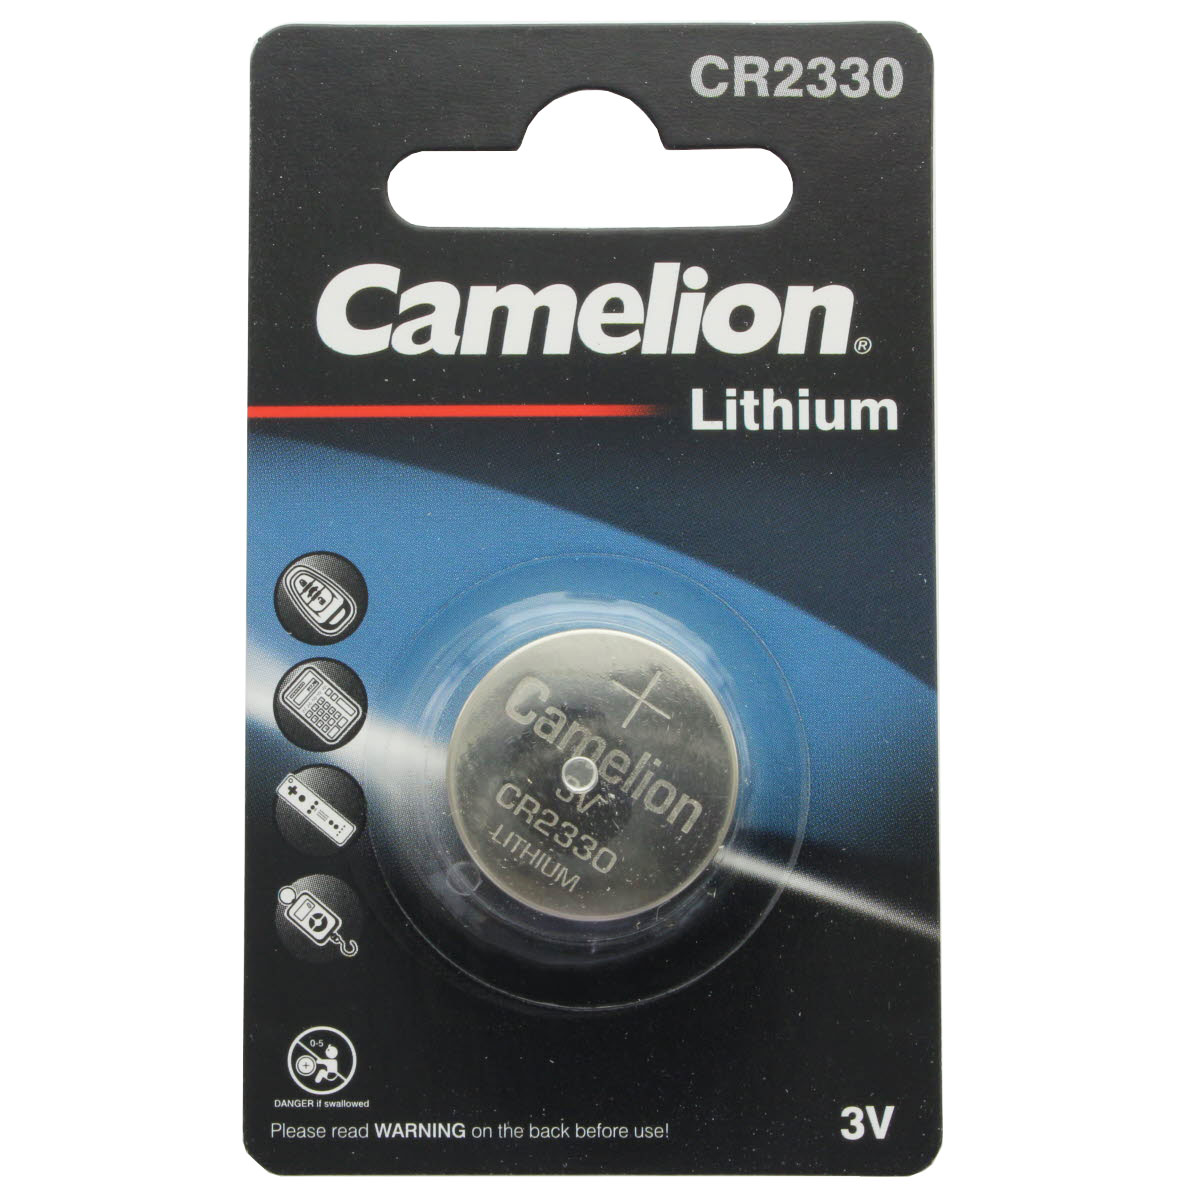 CR2335 Lithium Batterie (dafür alternativ CR2330) Artikel wird nicht mehr produziert! Alternativ kann die 0,5mm dünnere CR2330 verwendet werden, bitte Prüfen Sie ob Sie die 3,0mm Höhe anstelle der 3,5